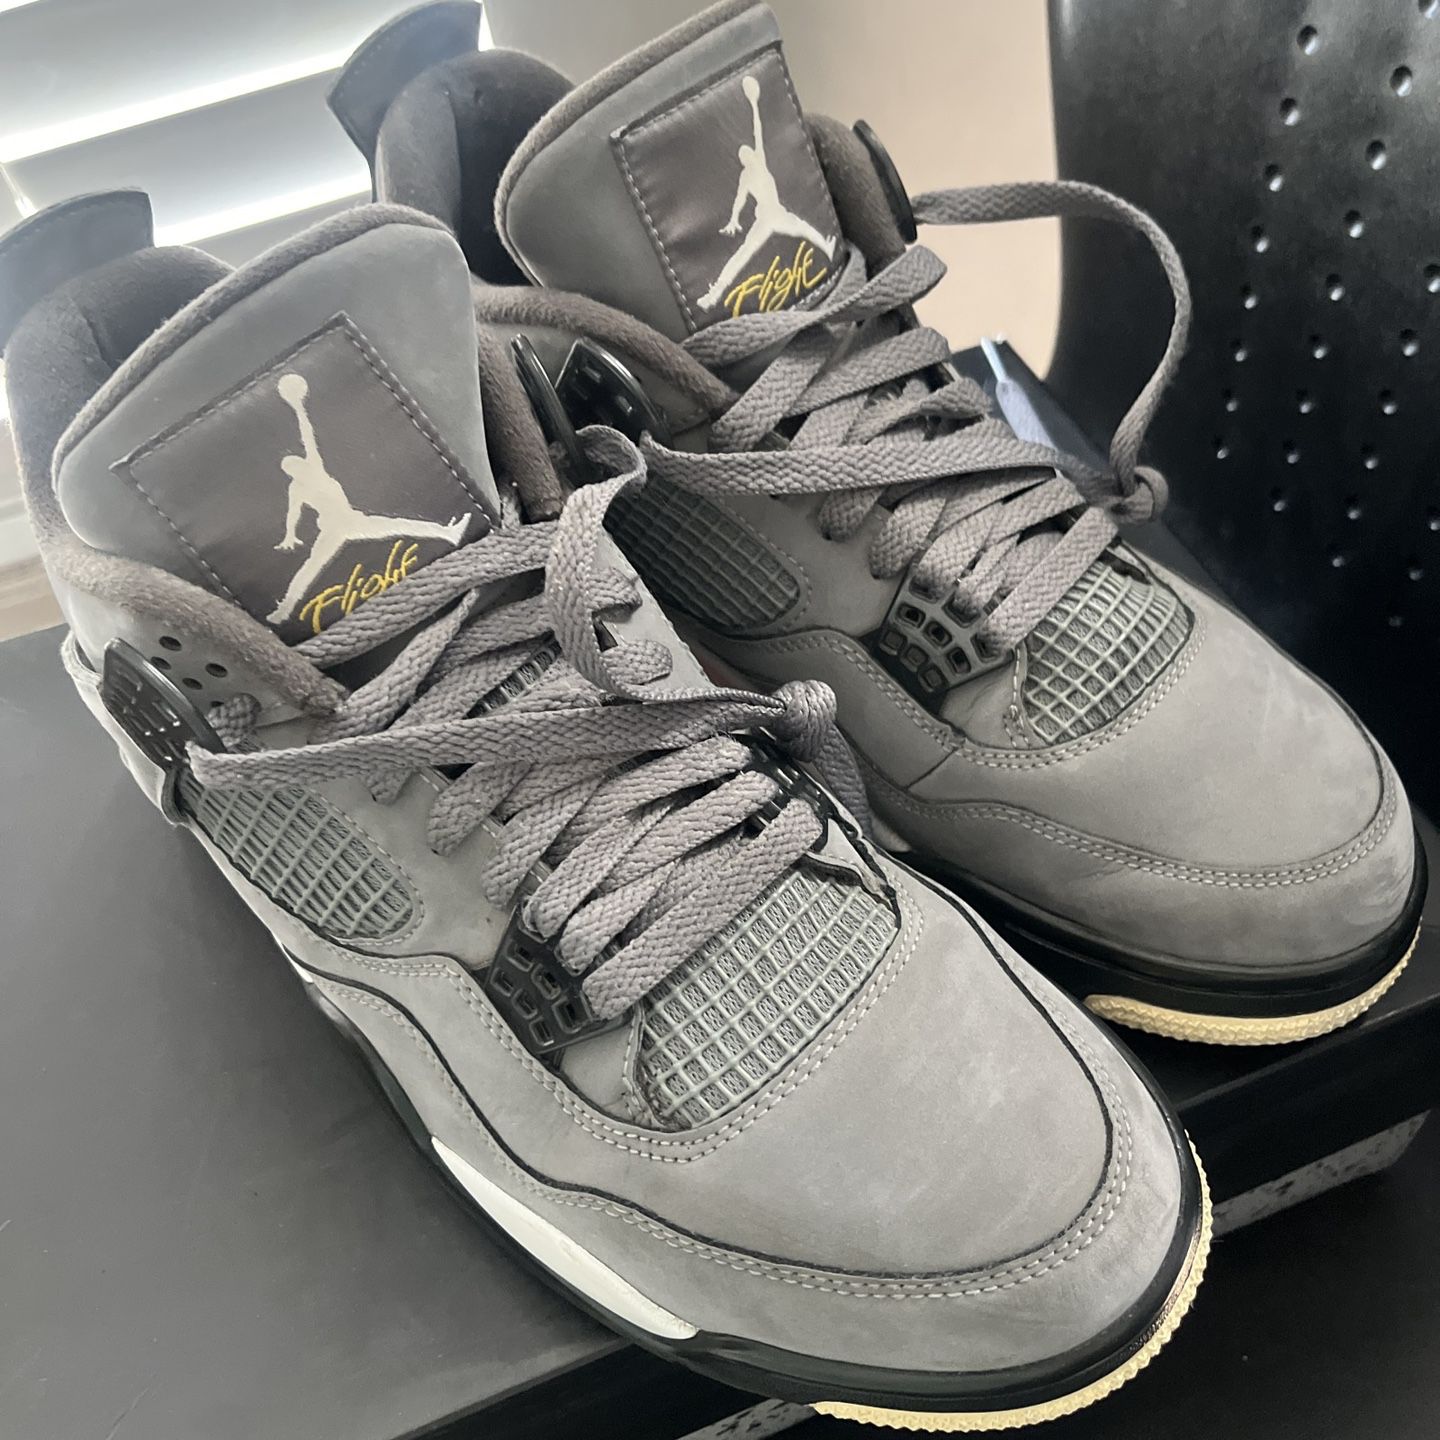 Jordan 4 Cool Grey 2019